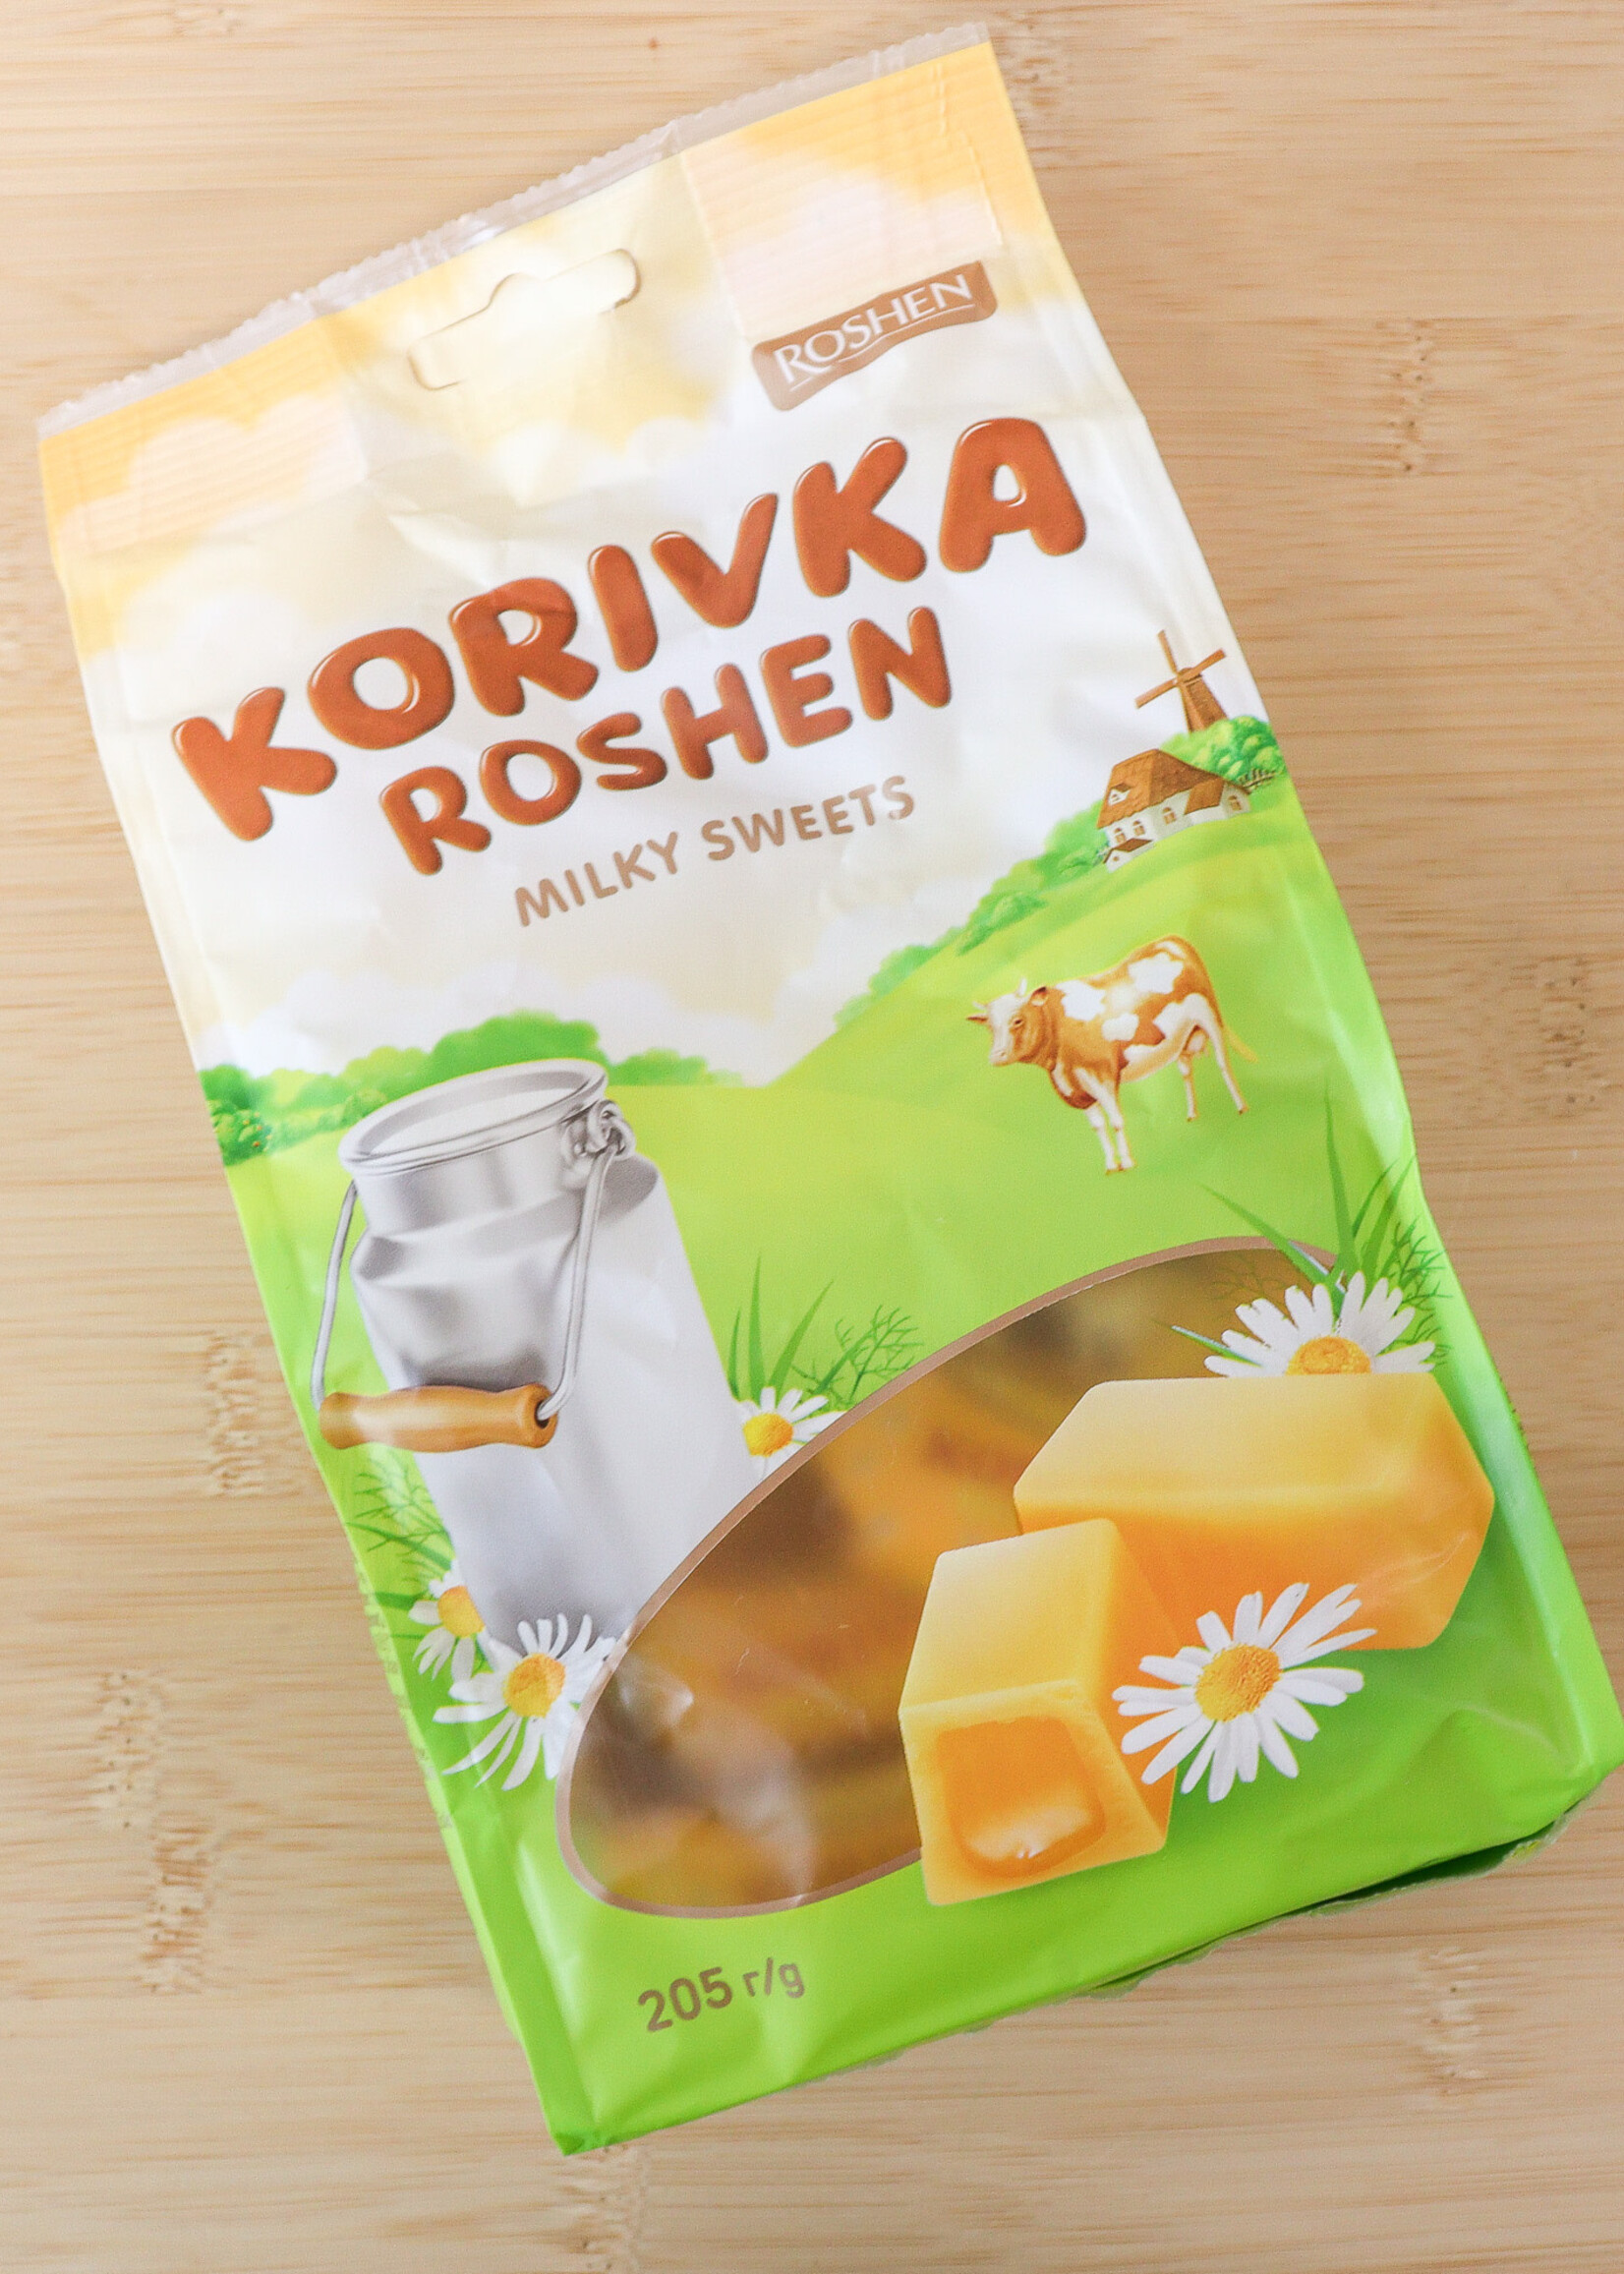 FOOD - Milky Sweets " Korivka" from Roshen Ukraine